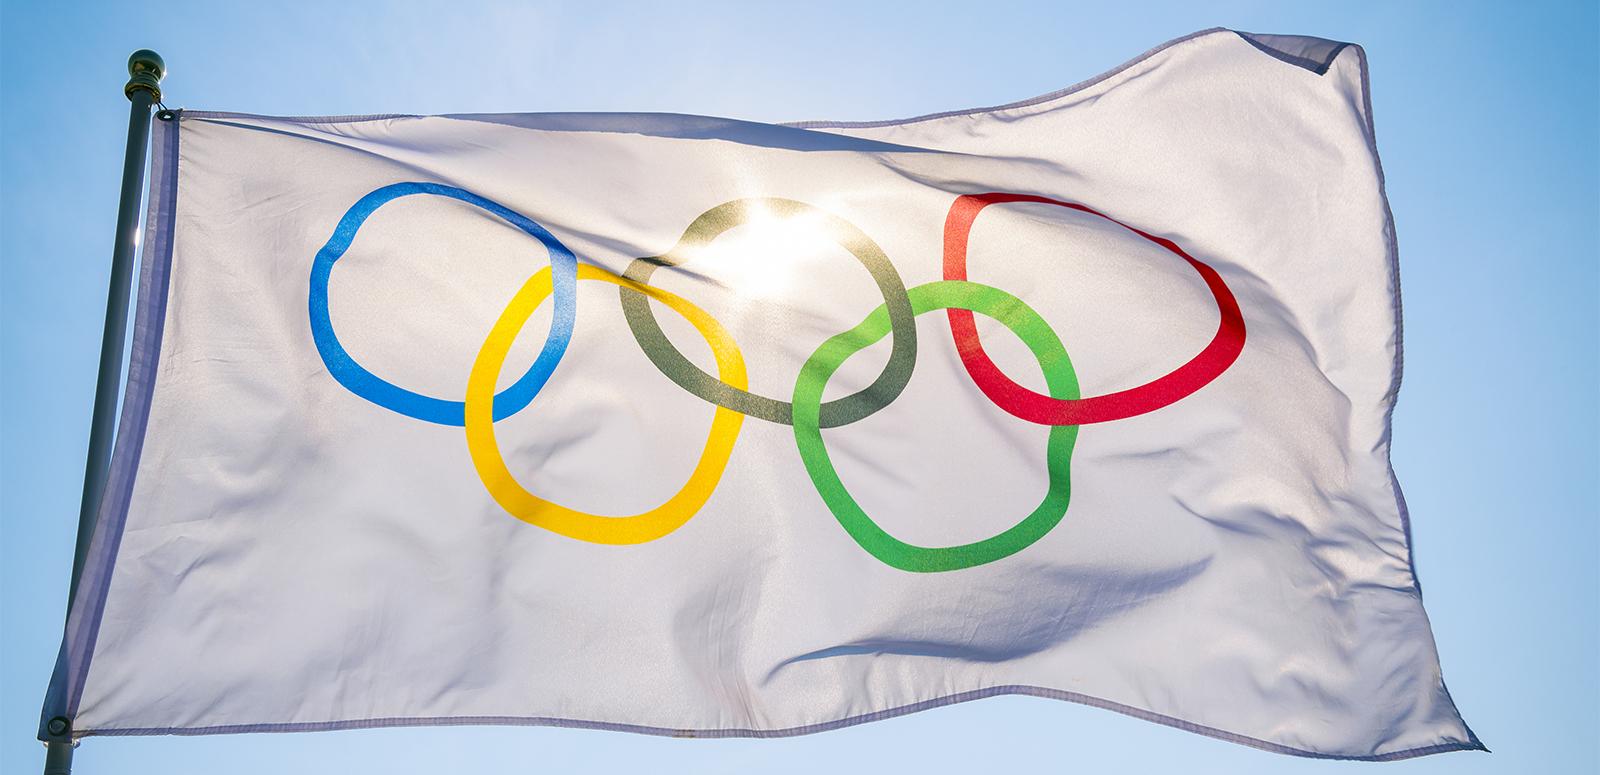 The Olympic flag against a blue sky